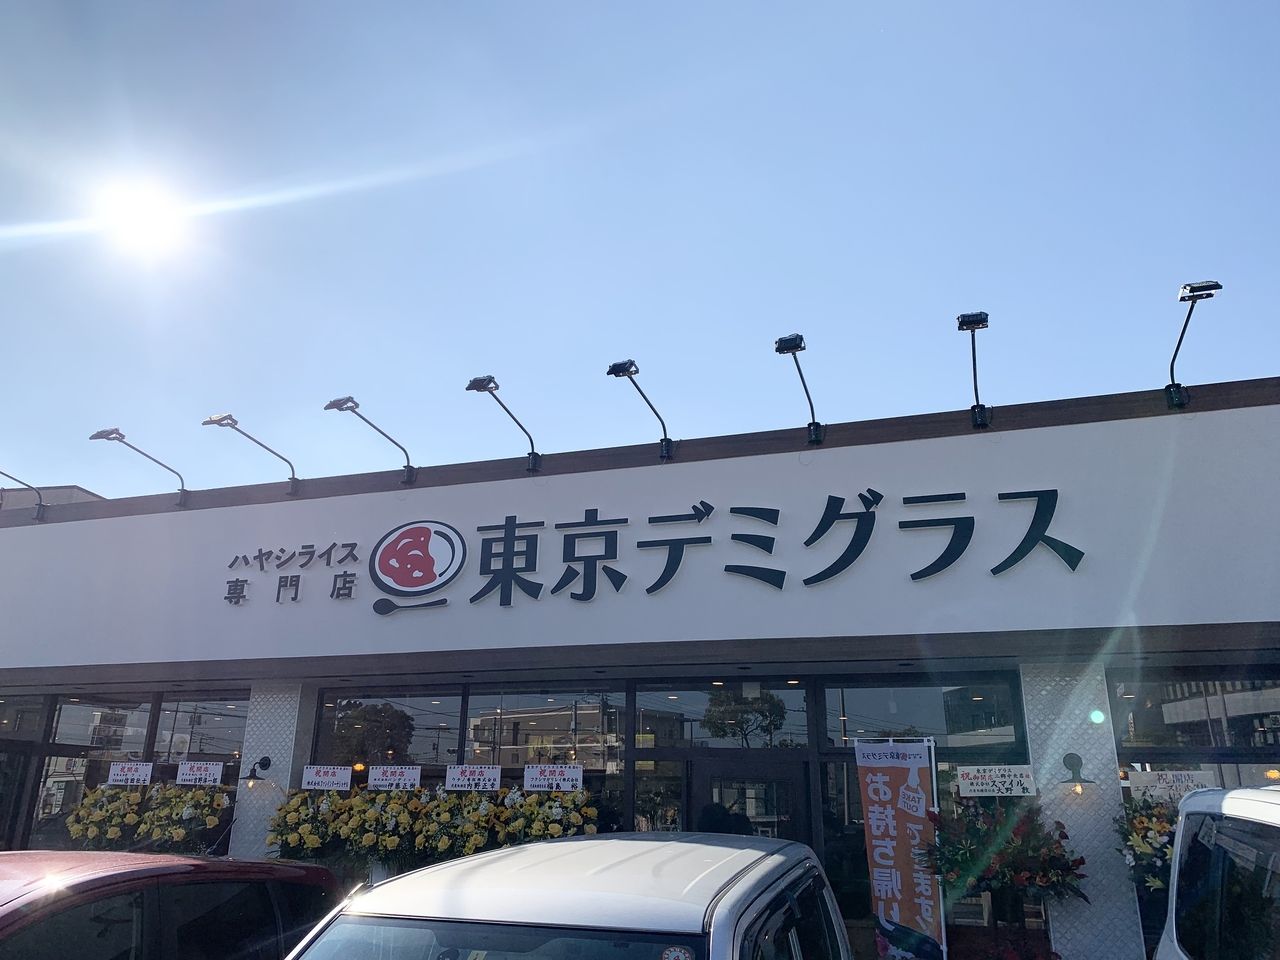 ハヤシライス専門店「東京デミグラス三郷中央店」のアクセスはこちら